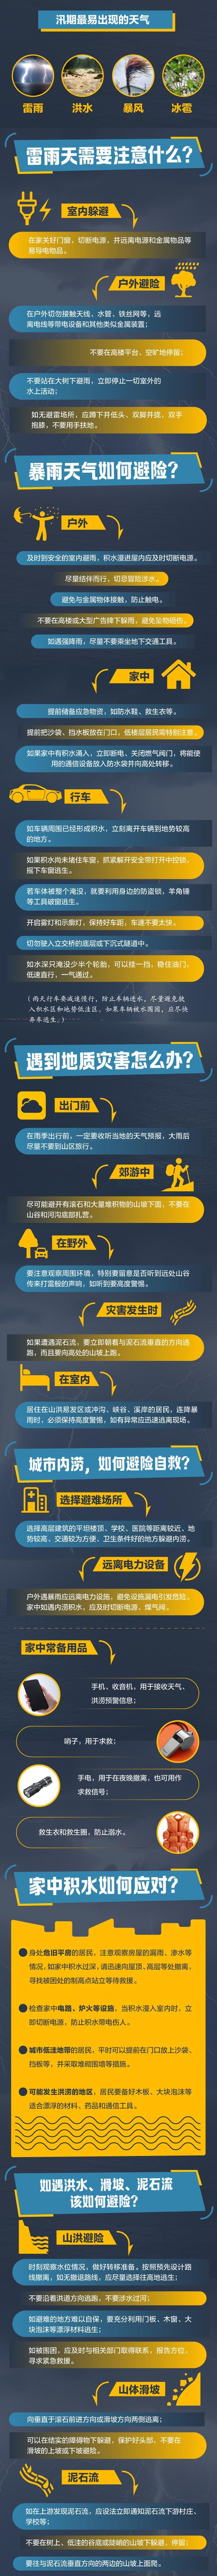 北京将迎大到暴雨局地大暴雨 公众请注意防雷避雨